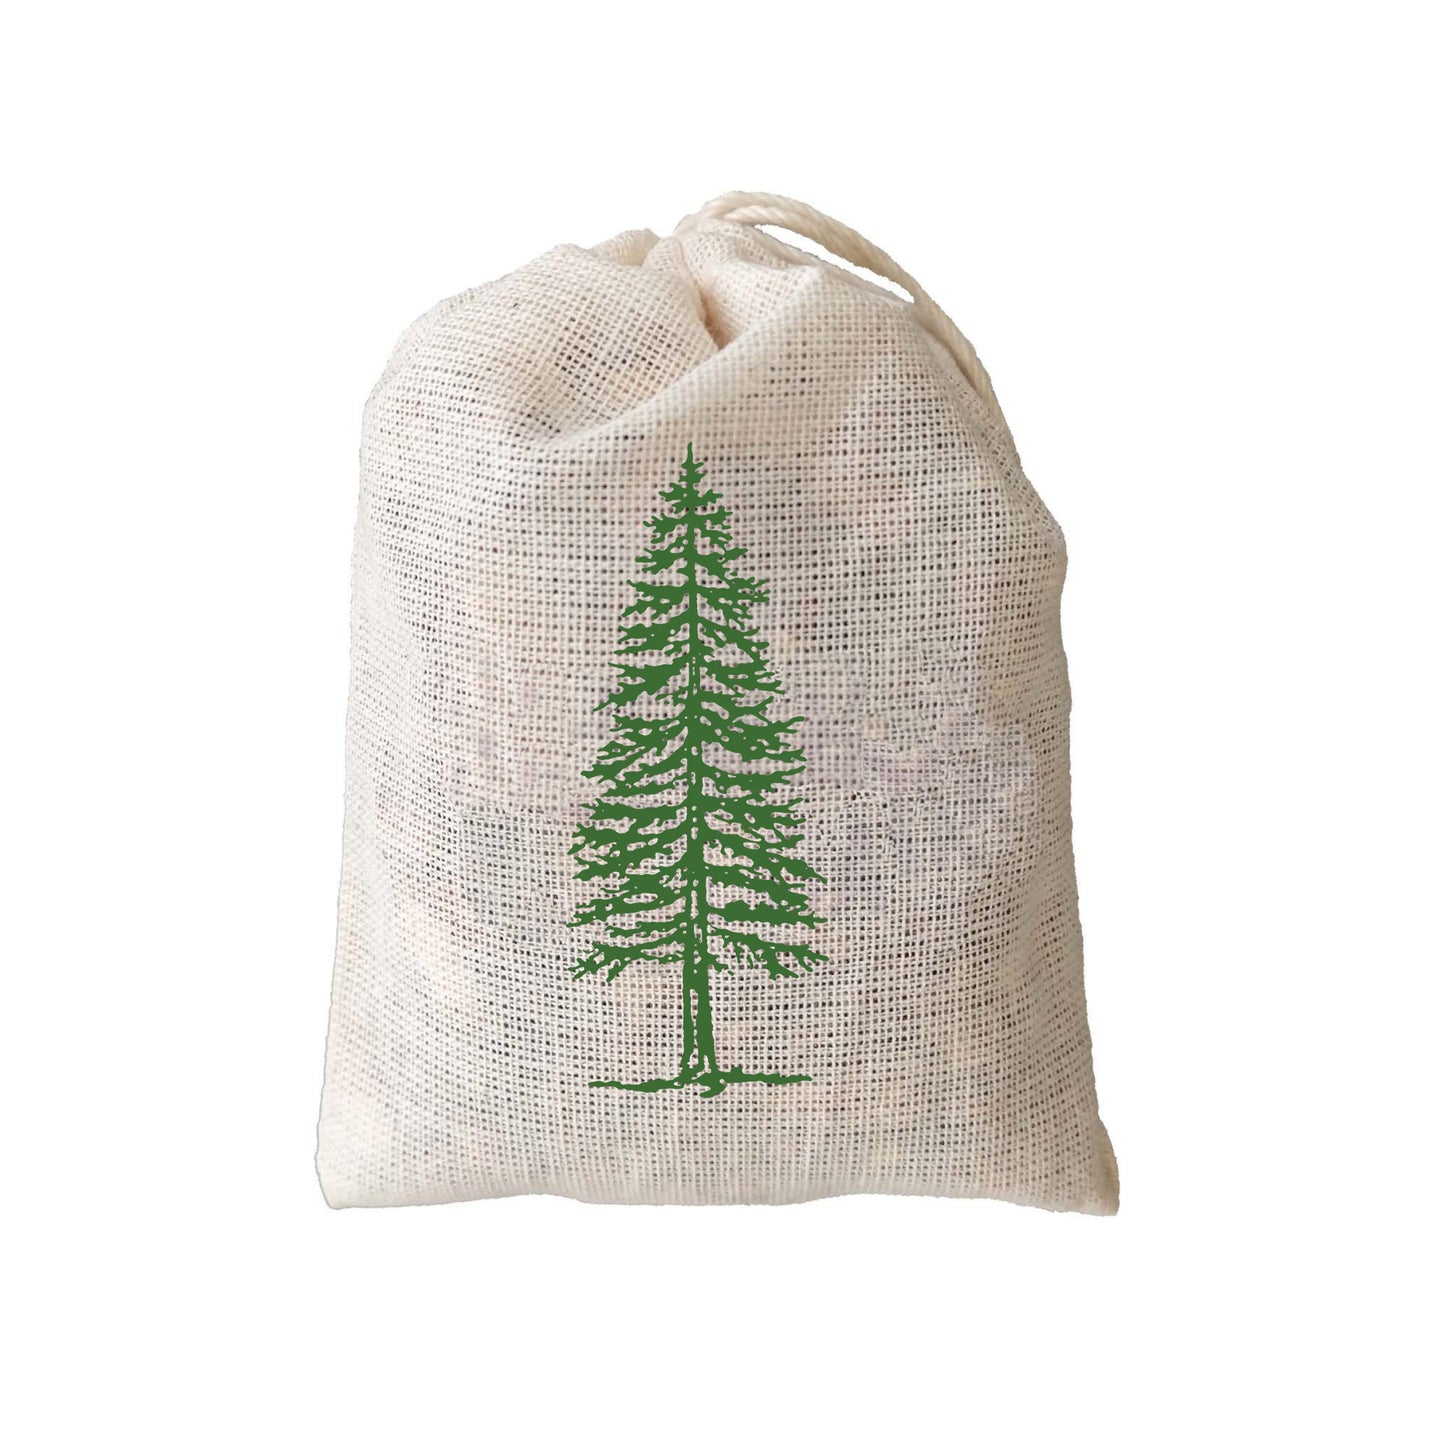 Evergreen Pine Balsam Fir Sachet - 3 Pack for Closet, garment bag or Drawer